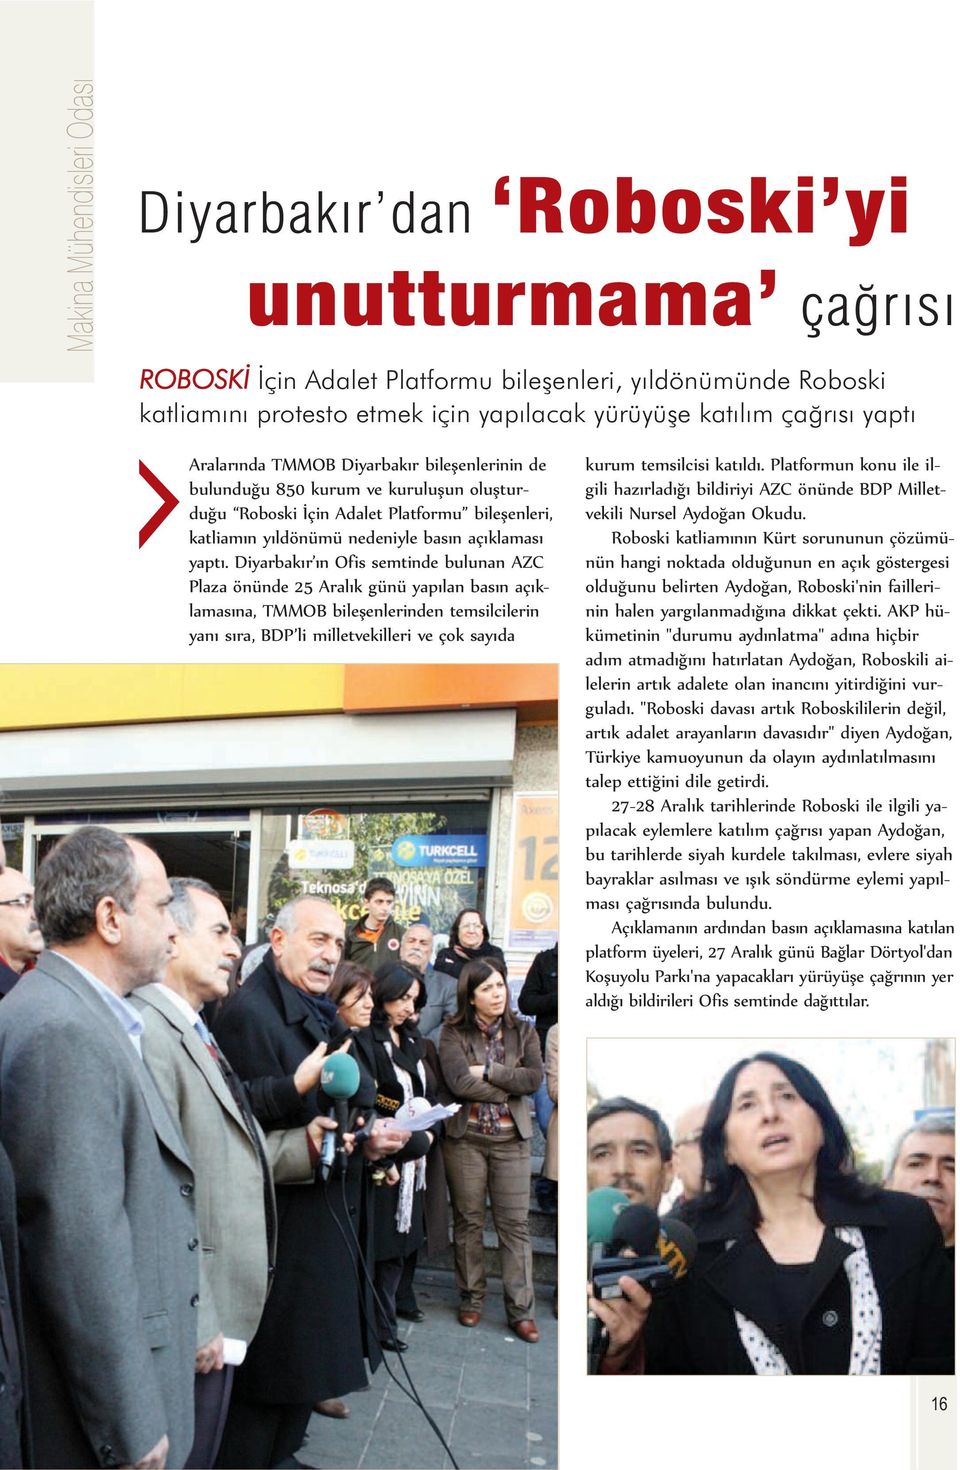 Diyarbakır ın Ofis semtinde bulunan AZC Plaza önünde 25 Aralık günü yapılan basın açıklamasına, TMMOB bileşenlerinden temsilcilerin yanı sıra, BDP li milletvekilleri ve çok sayıda kurum temsilcisi